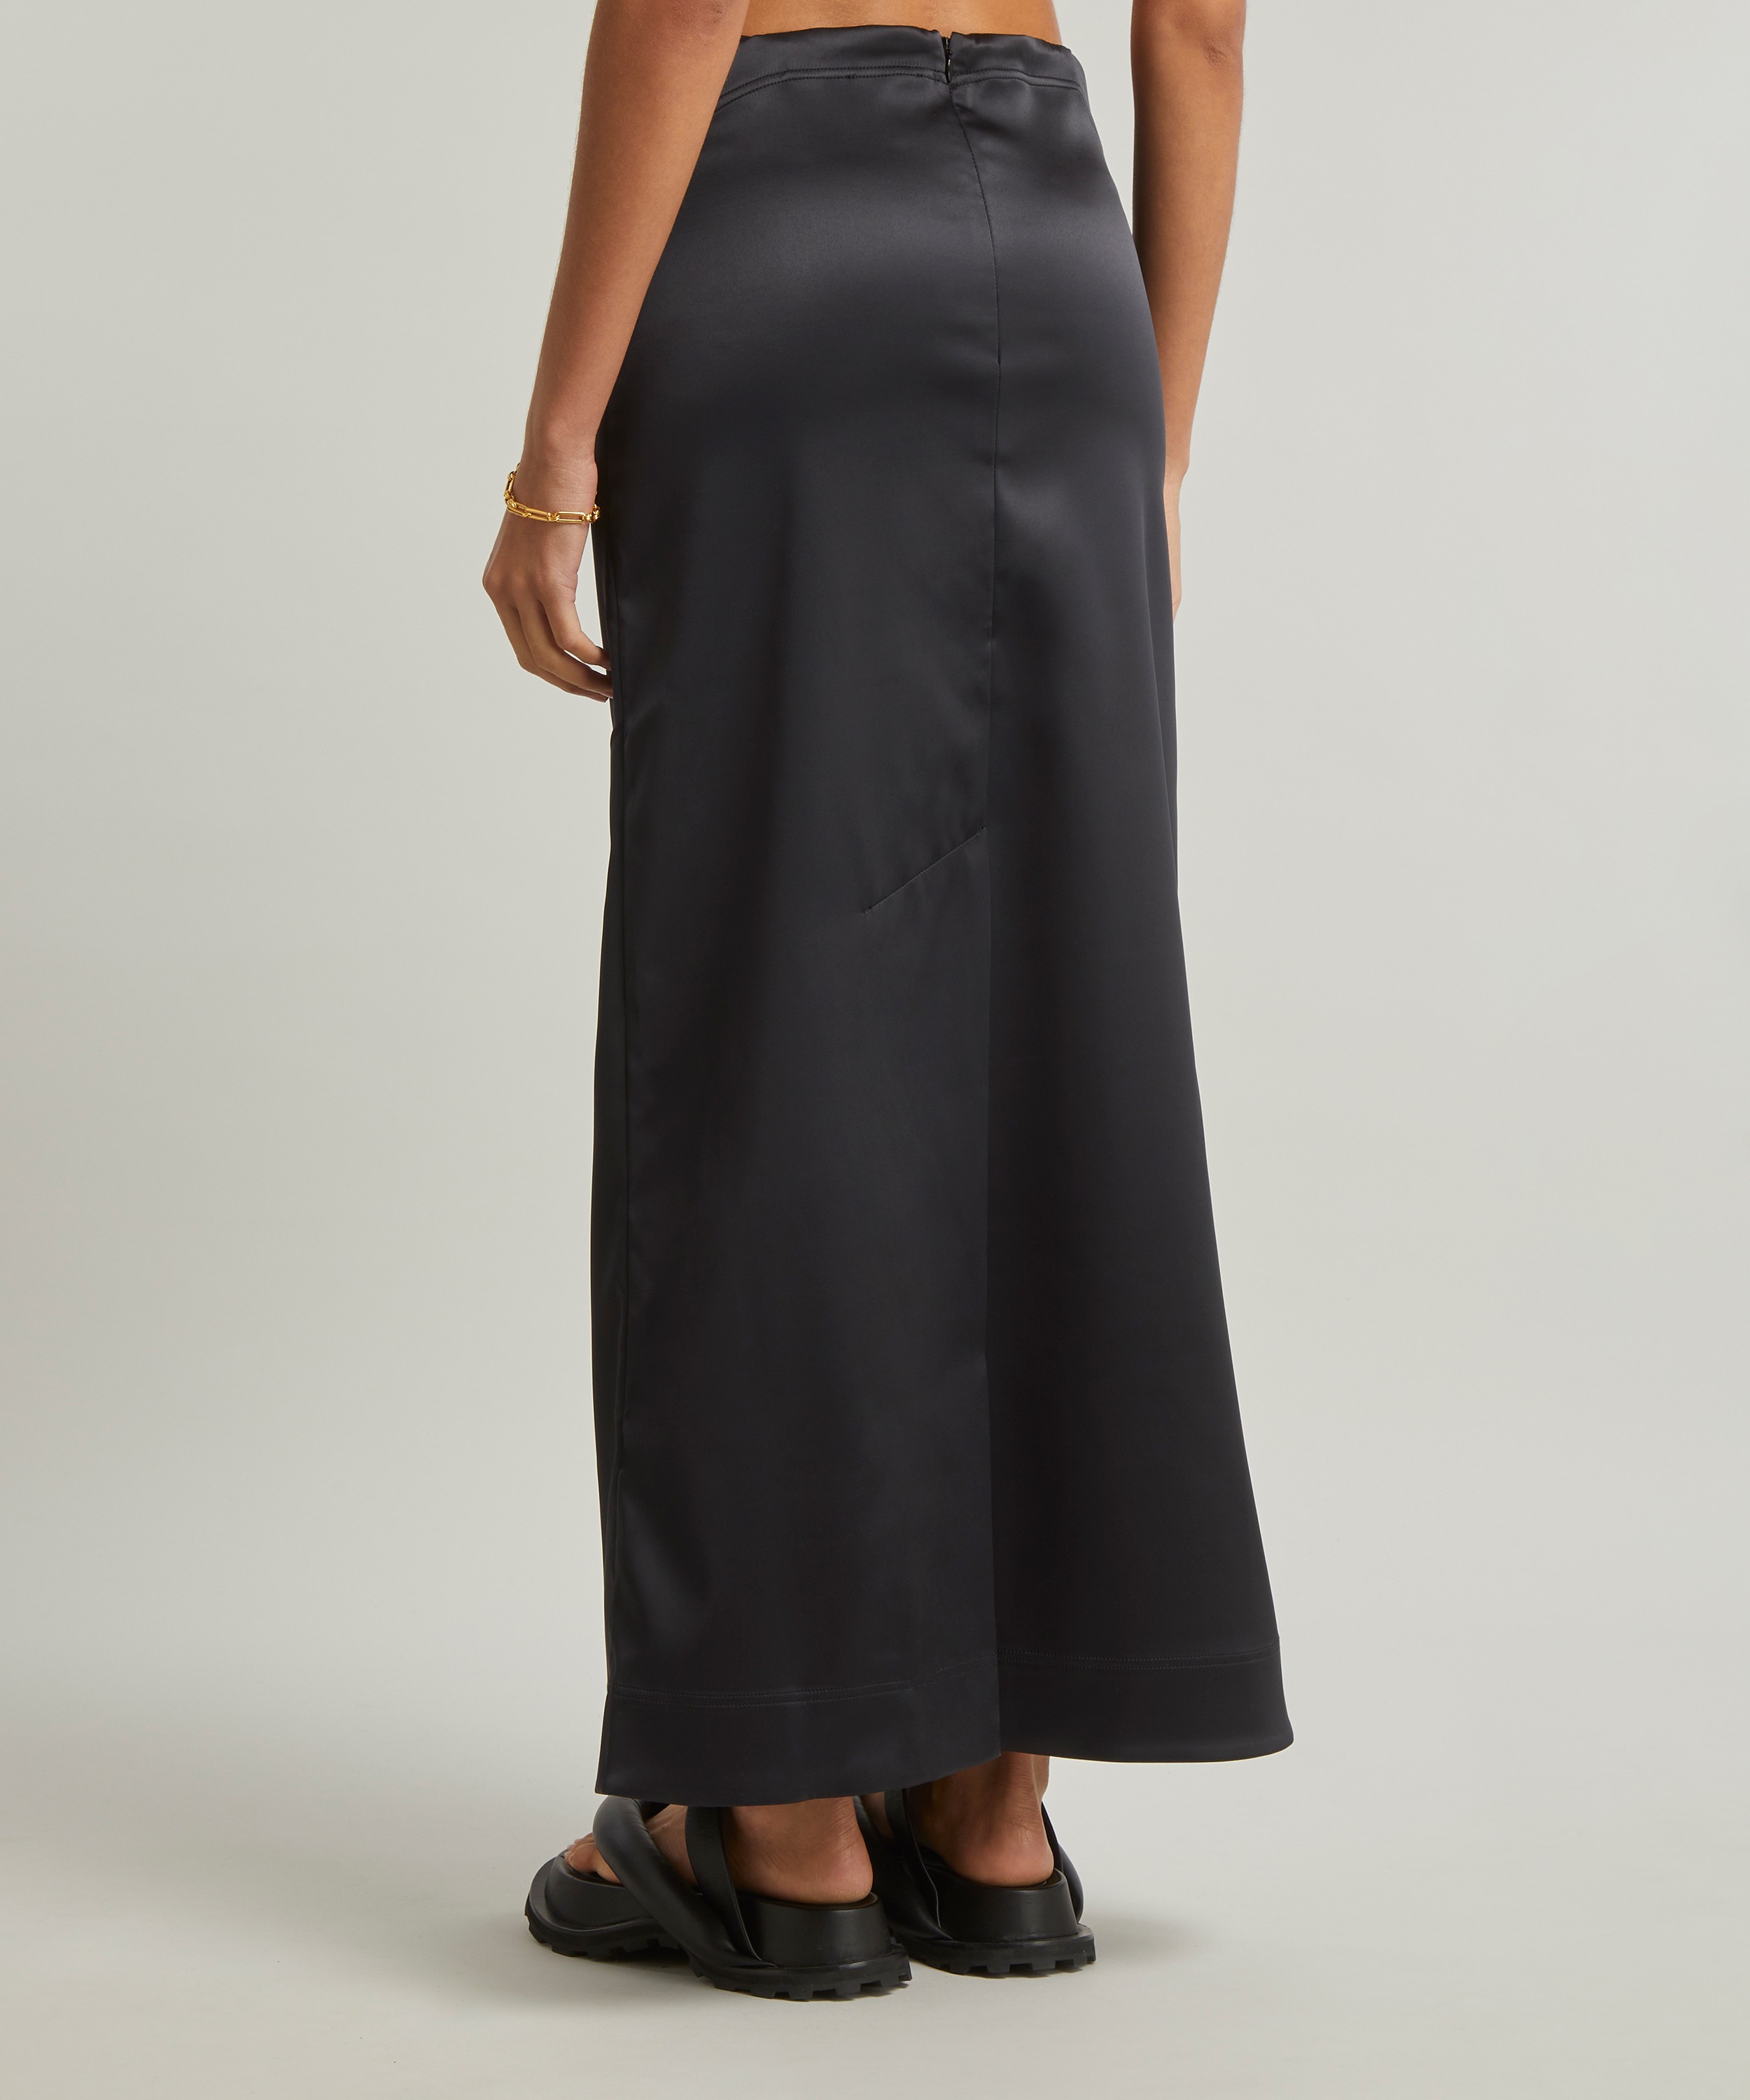 Black Maxi Skirt - Satin Side Slit Skirt - High Waist Long Skirt